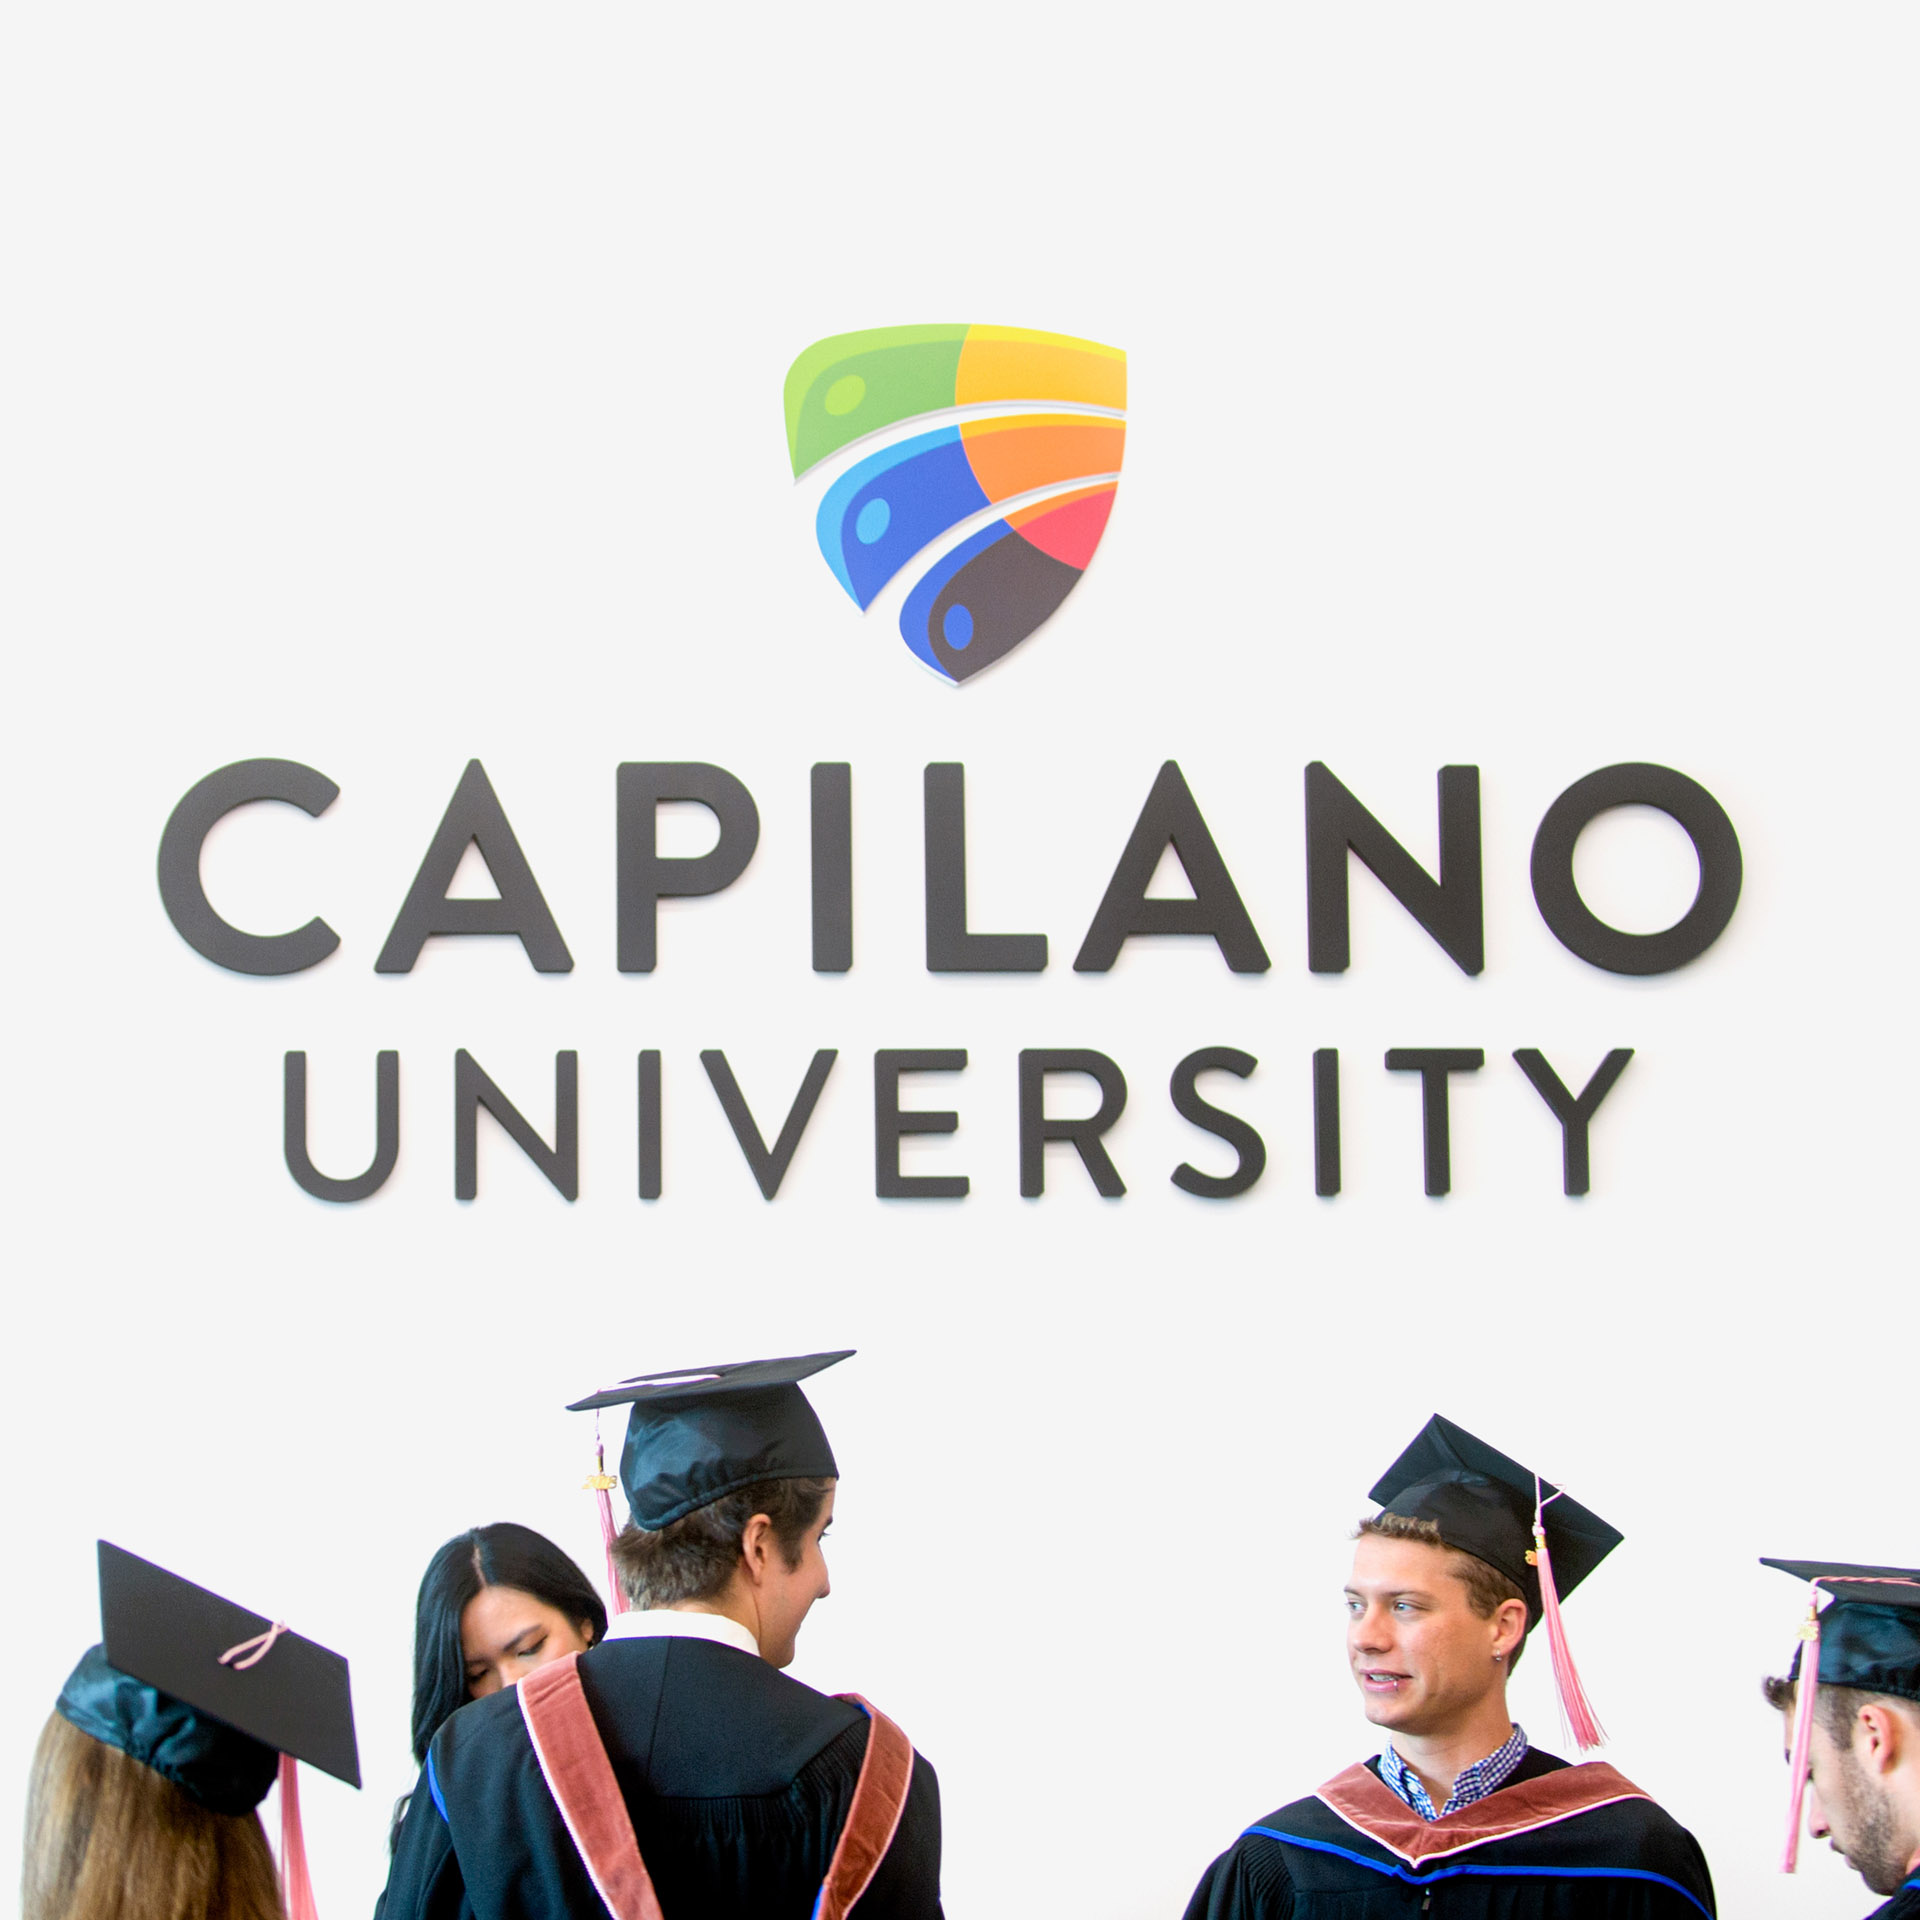 Capilano University Logo on wall